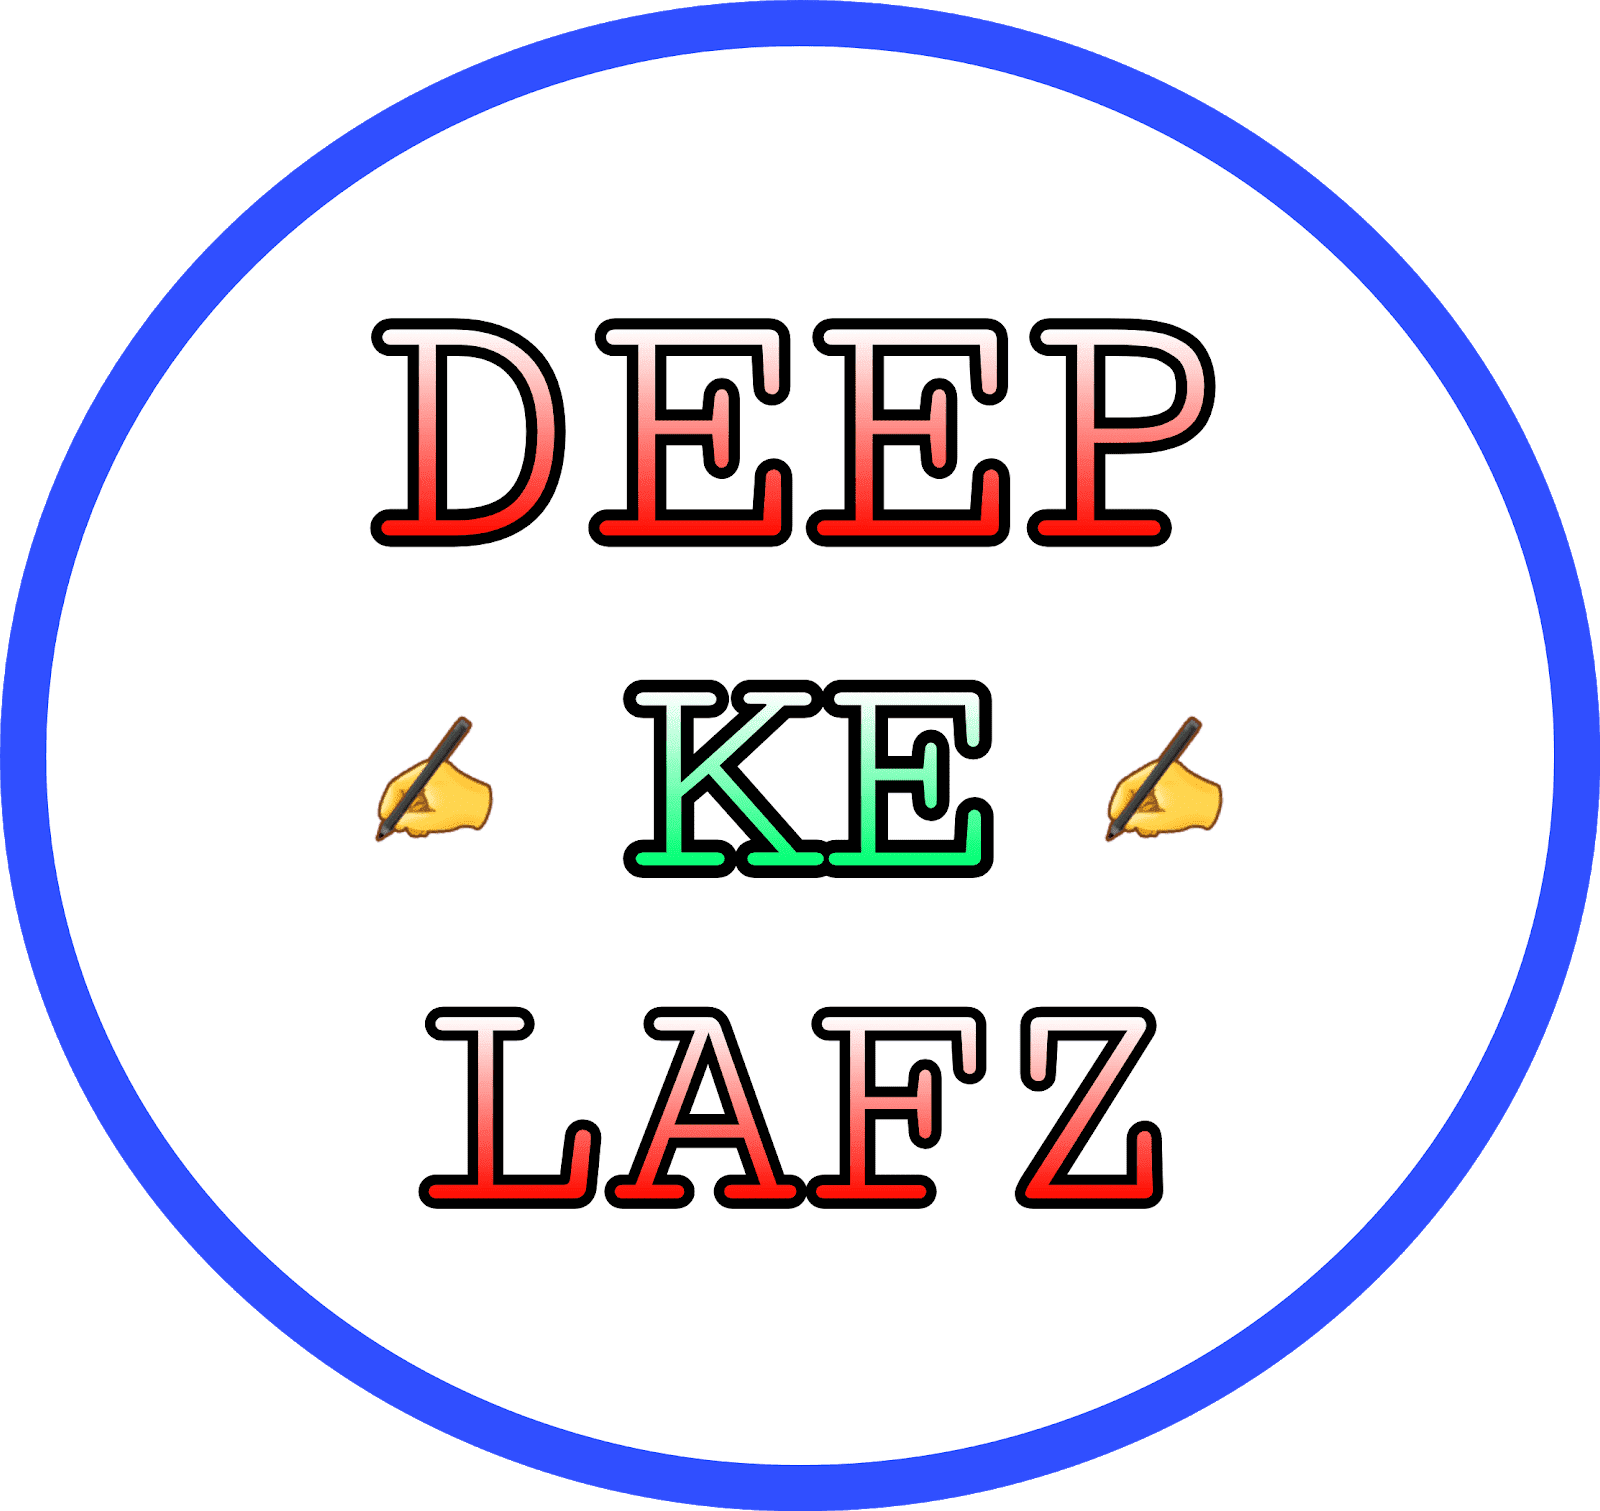 Deep Ke Lafz